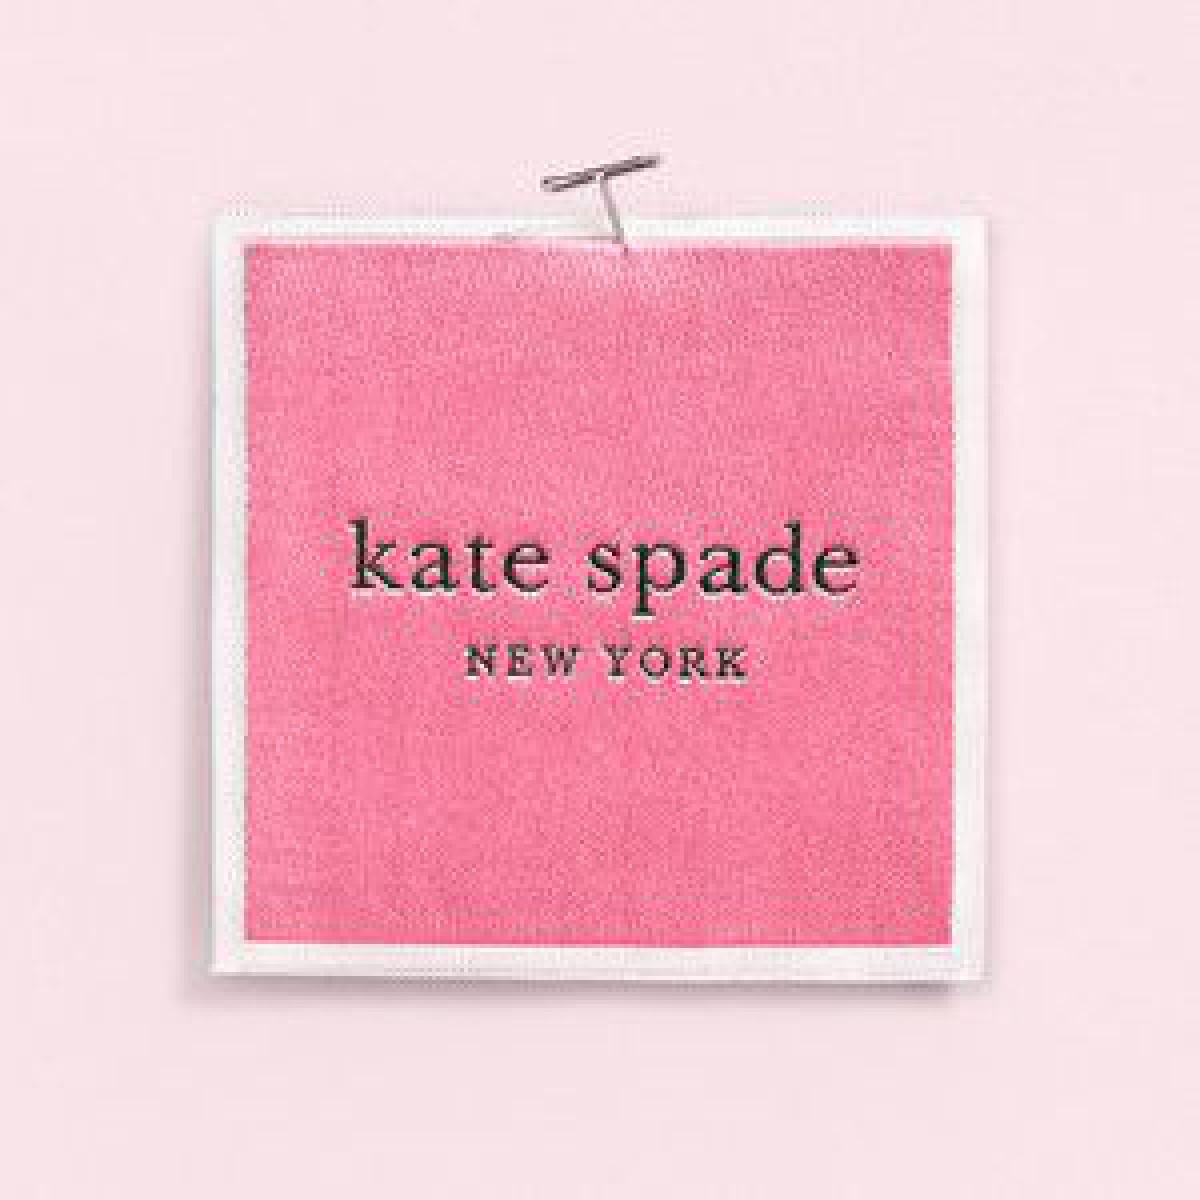 「ケイト・スペード ニューヨーク」がブランドロゴを変更